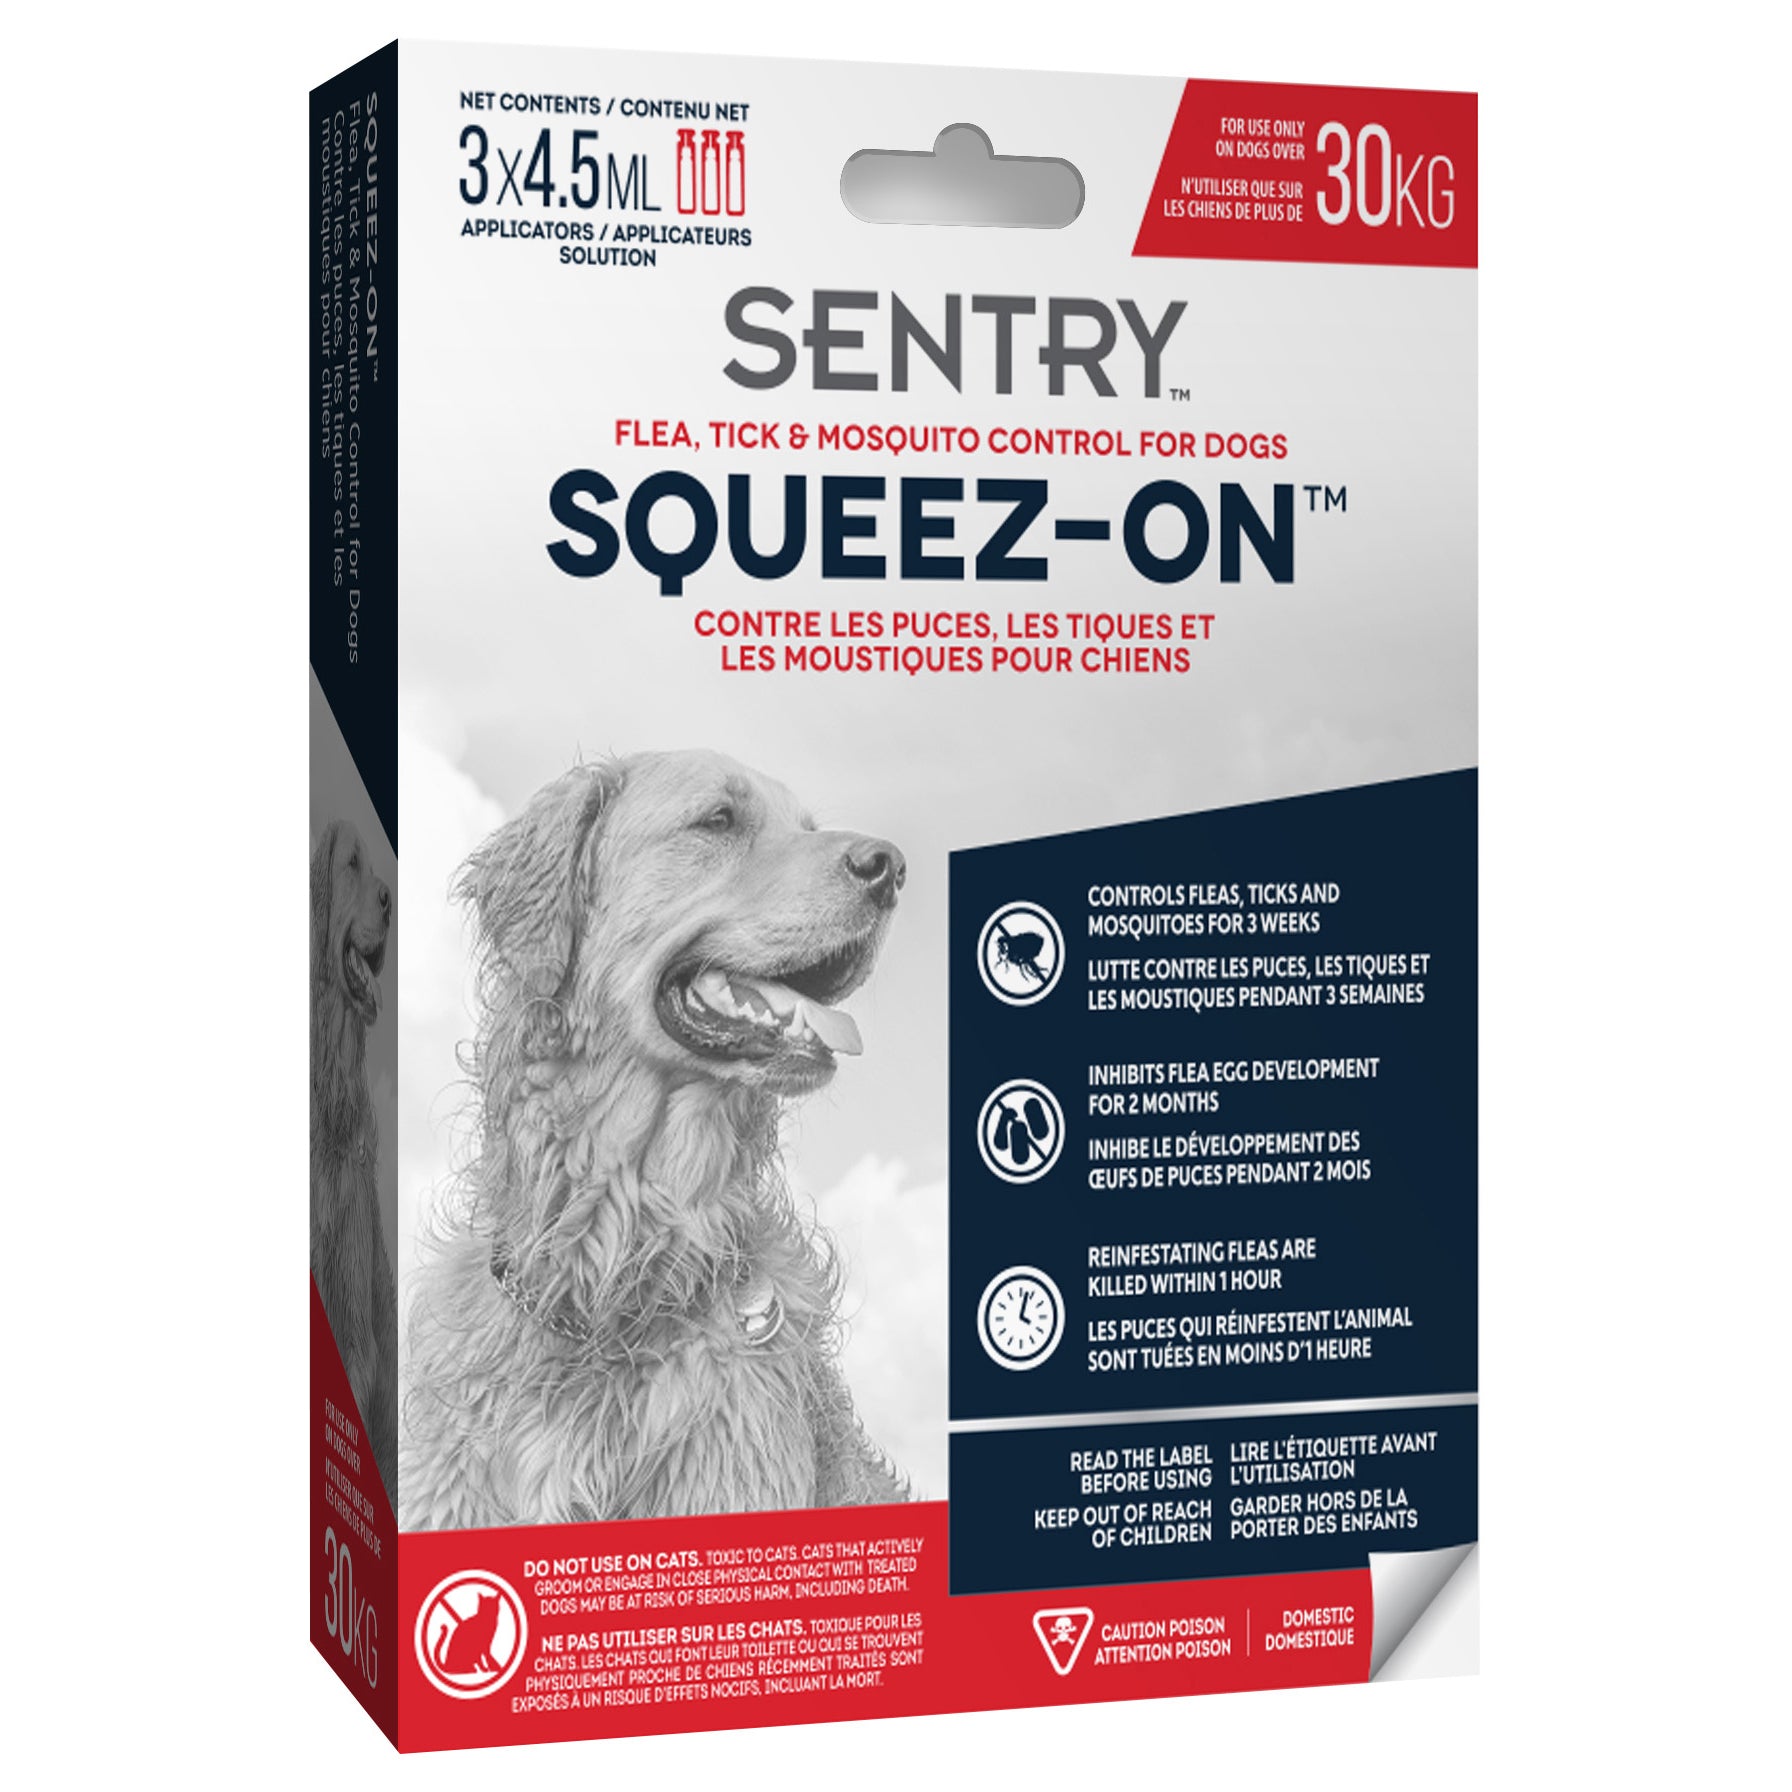 Tube à presser Sentry Sergeant’s pour l’élimination des puces, des tiques et des moustiques sur les chiens pesant plus de 30 kg